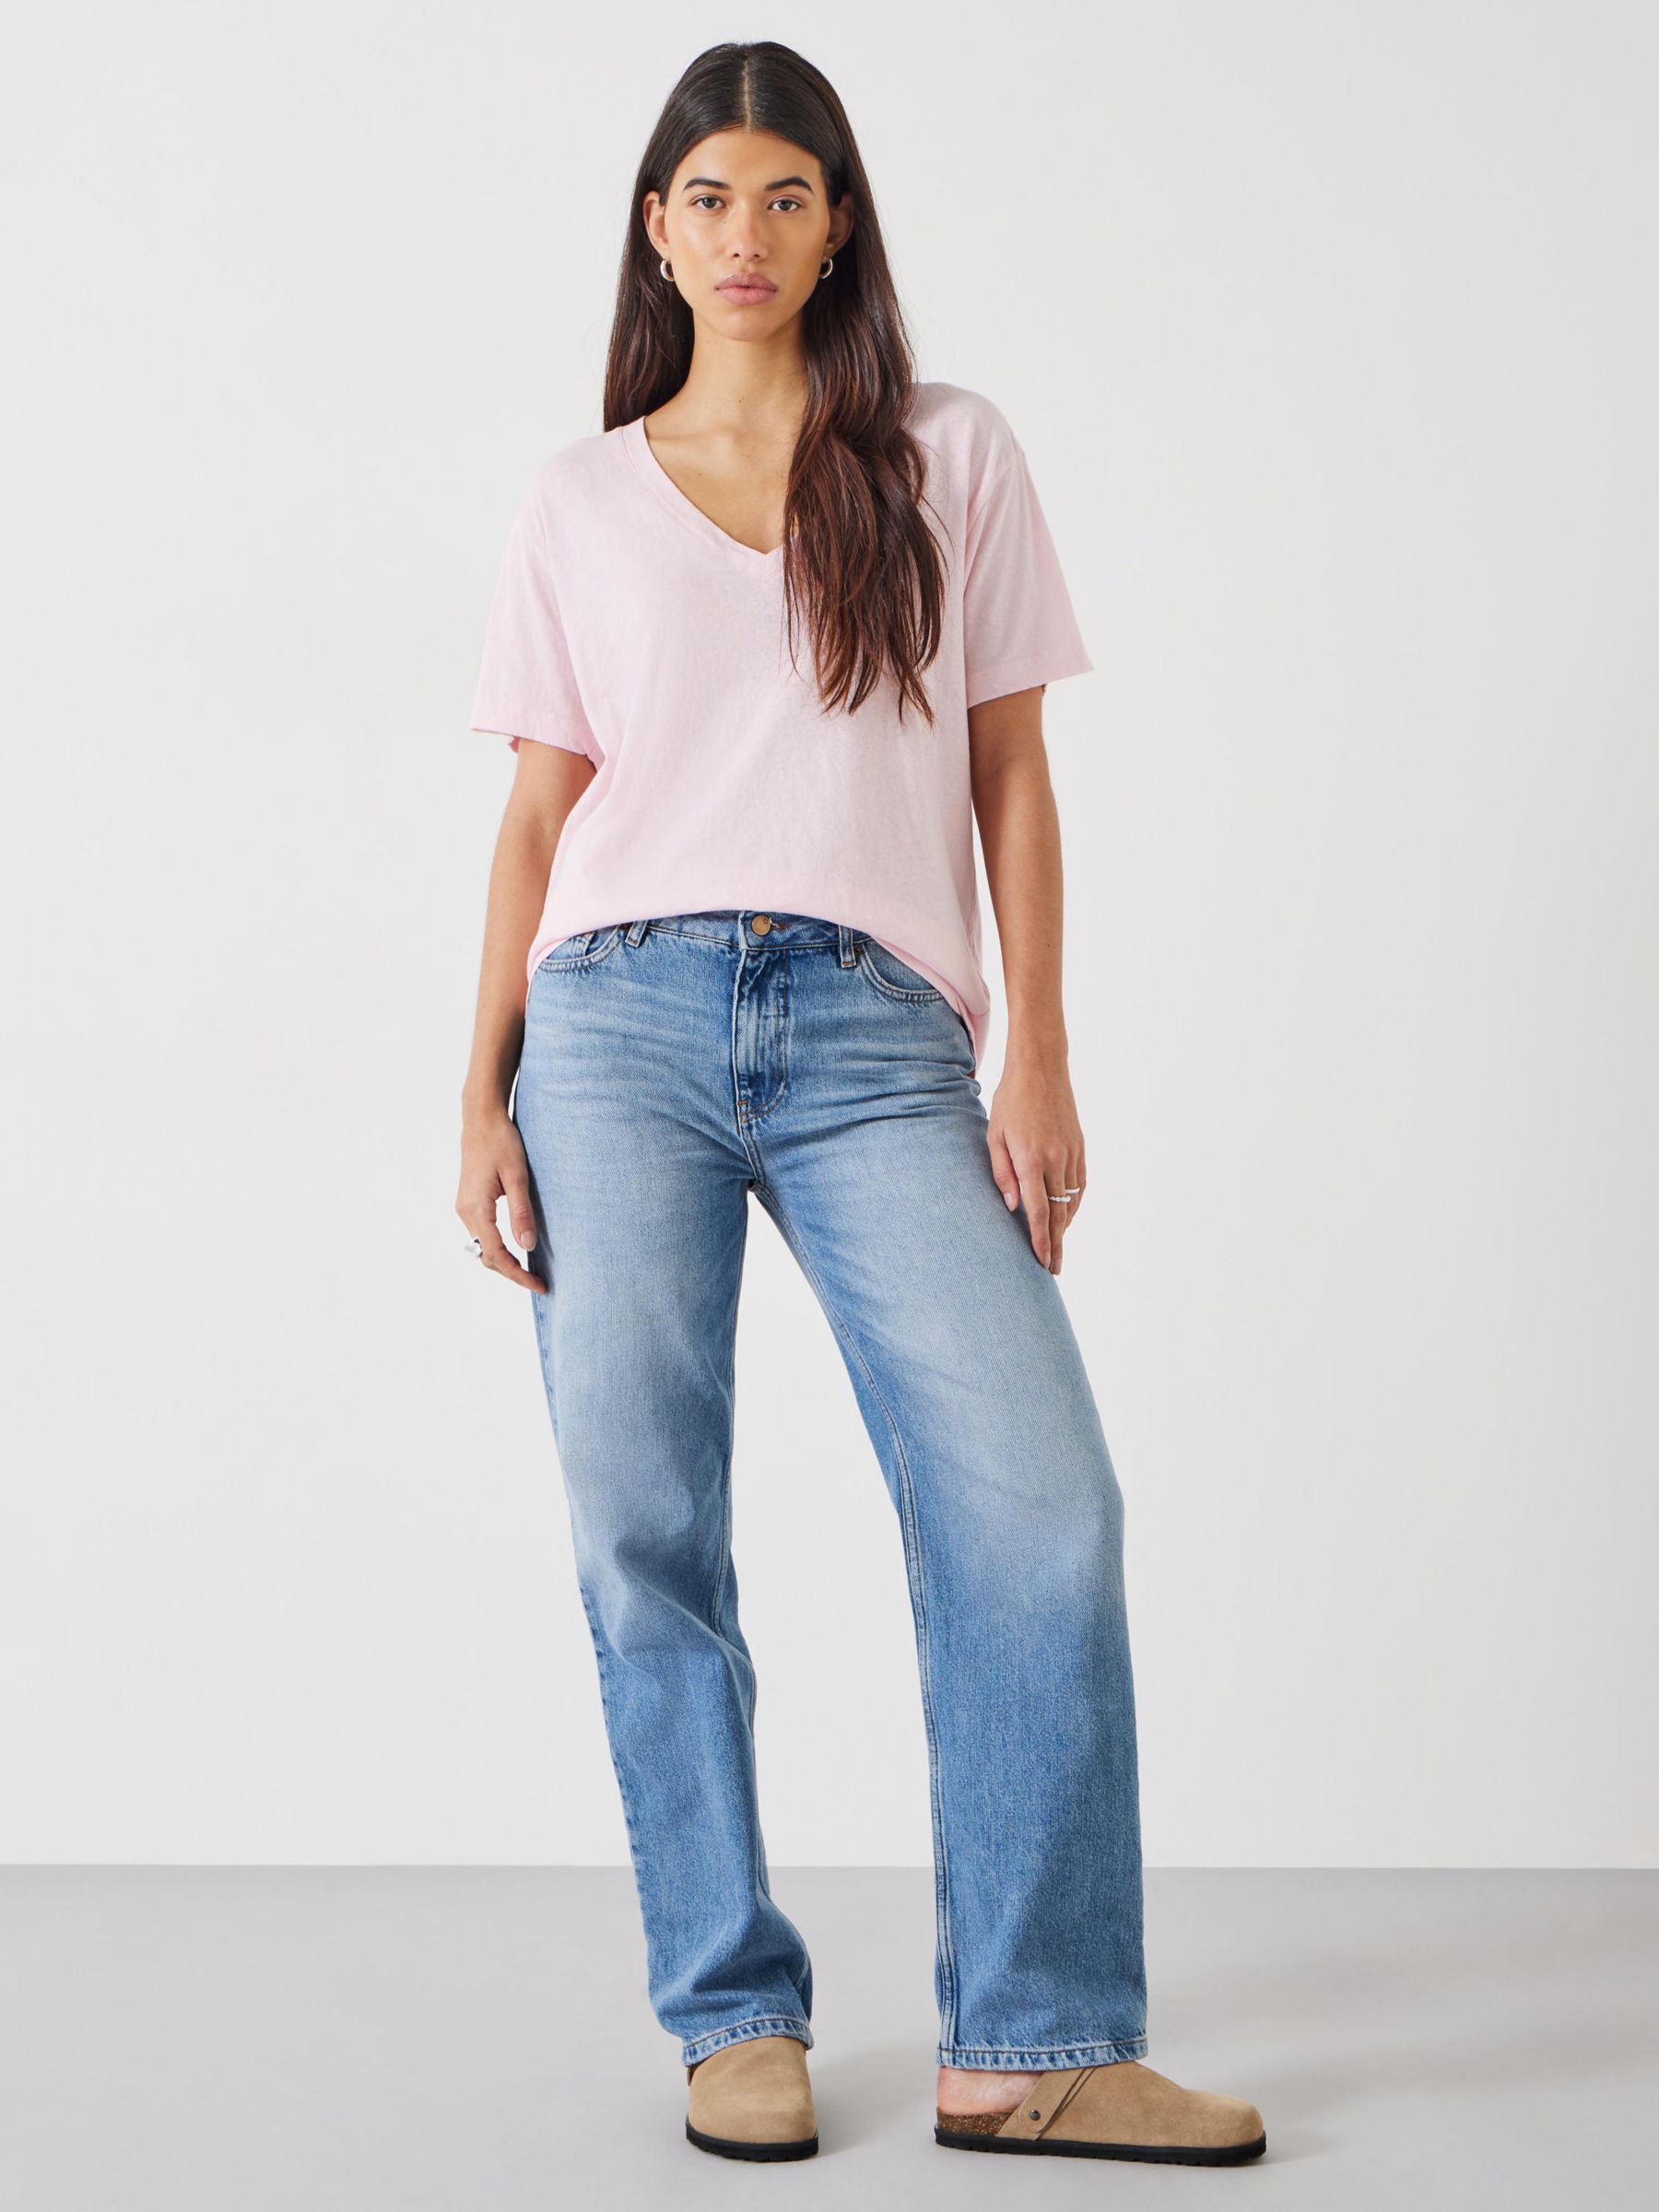 HUSH Plain Deep V-Neck Linen Blend T-Shirt, Pink, XL